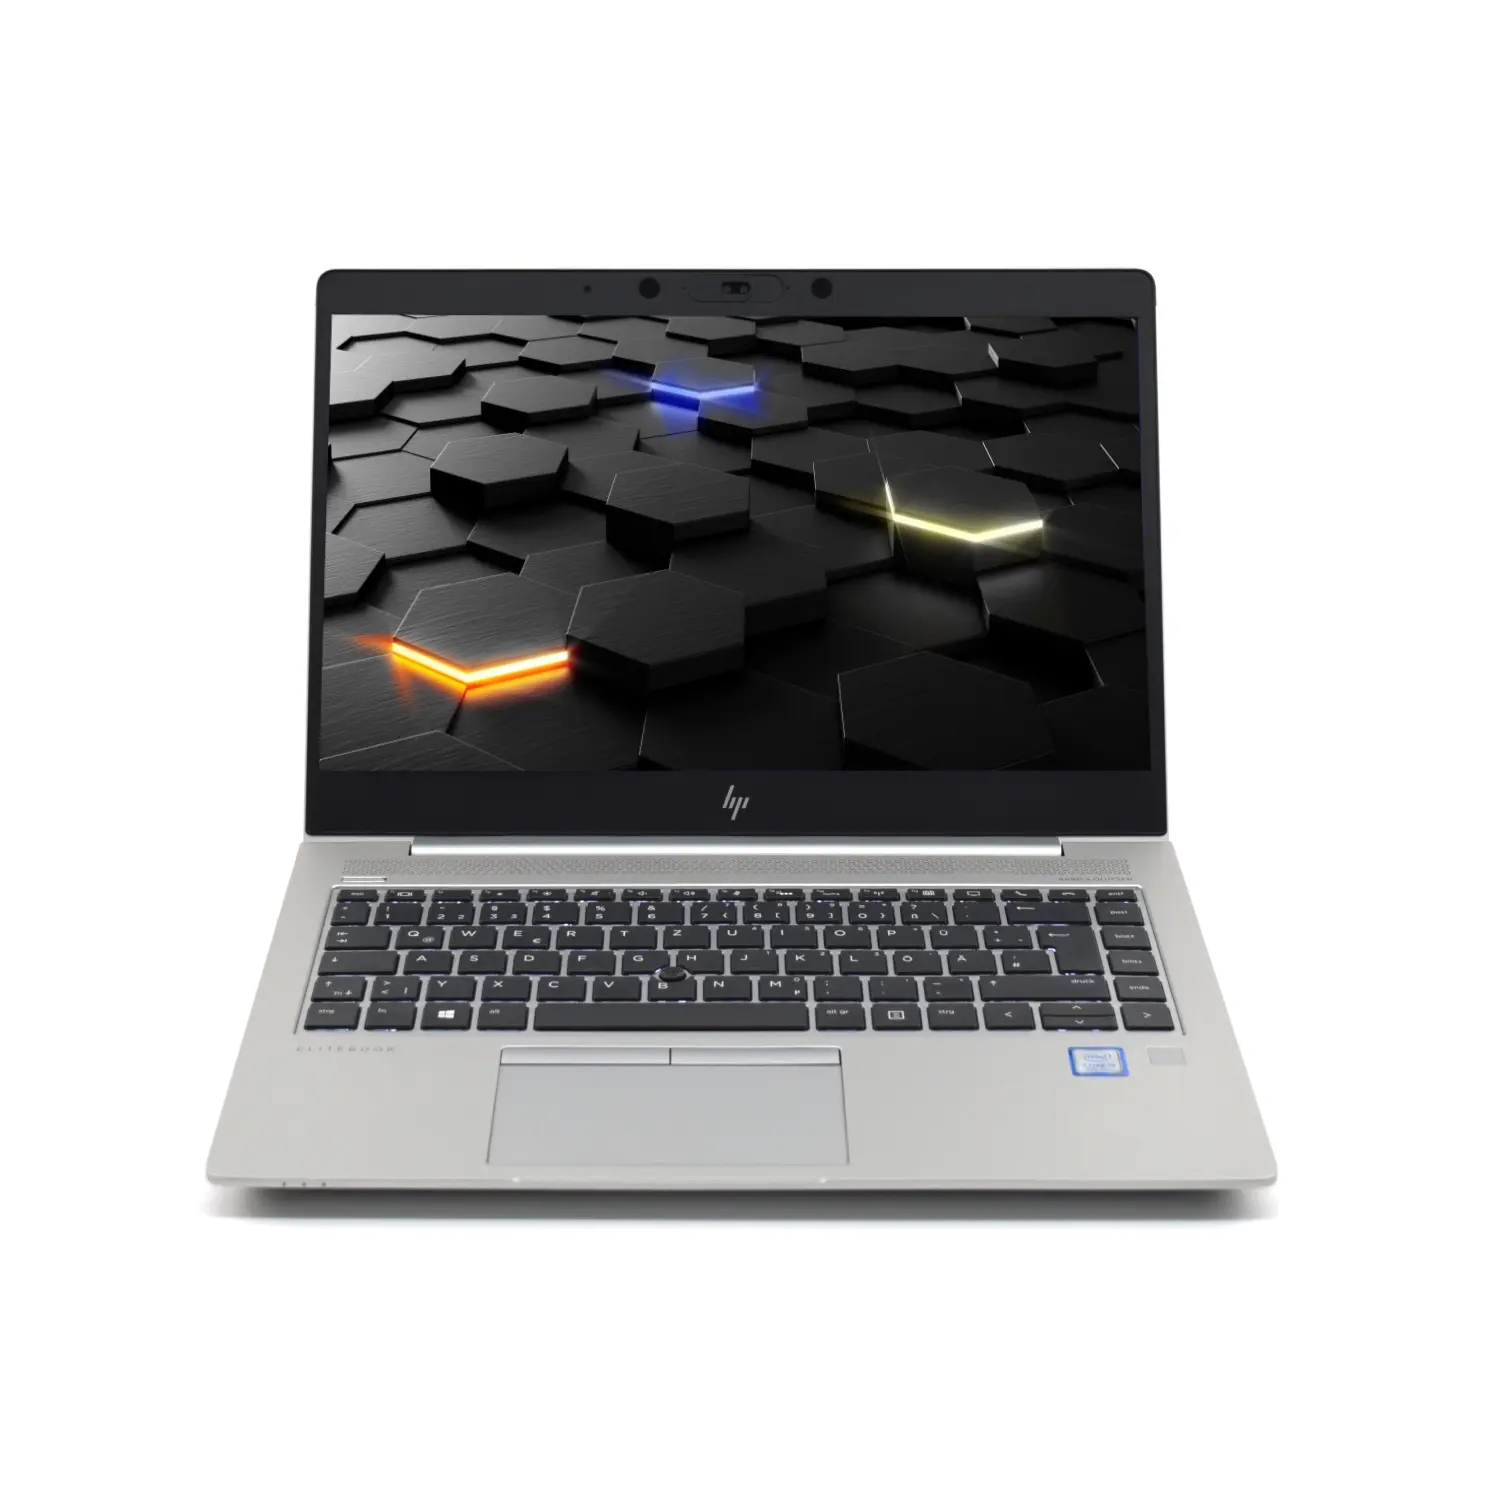 HP EliteBook 840 G5 i5 (8.Gen) FHD IPS, 16GB, 500GB NVMe, mit LTE, Webcam, Windows 10 Pro